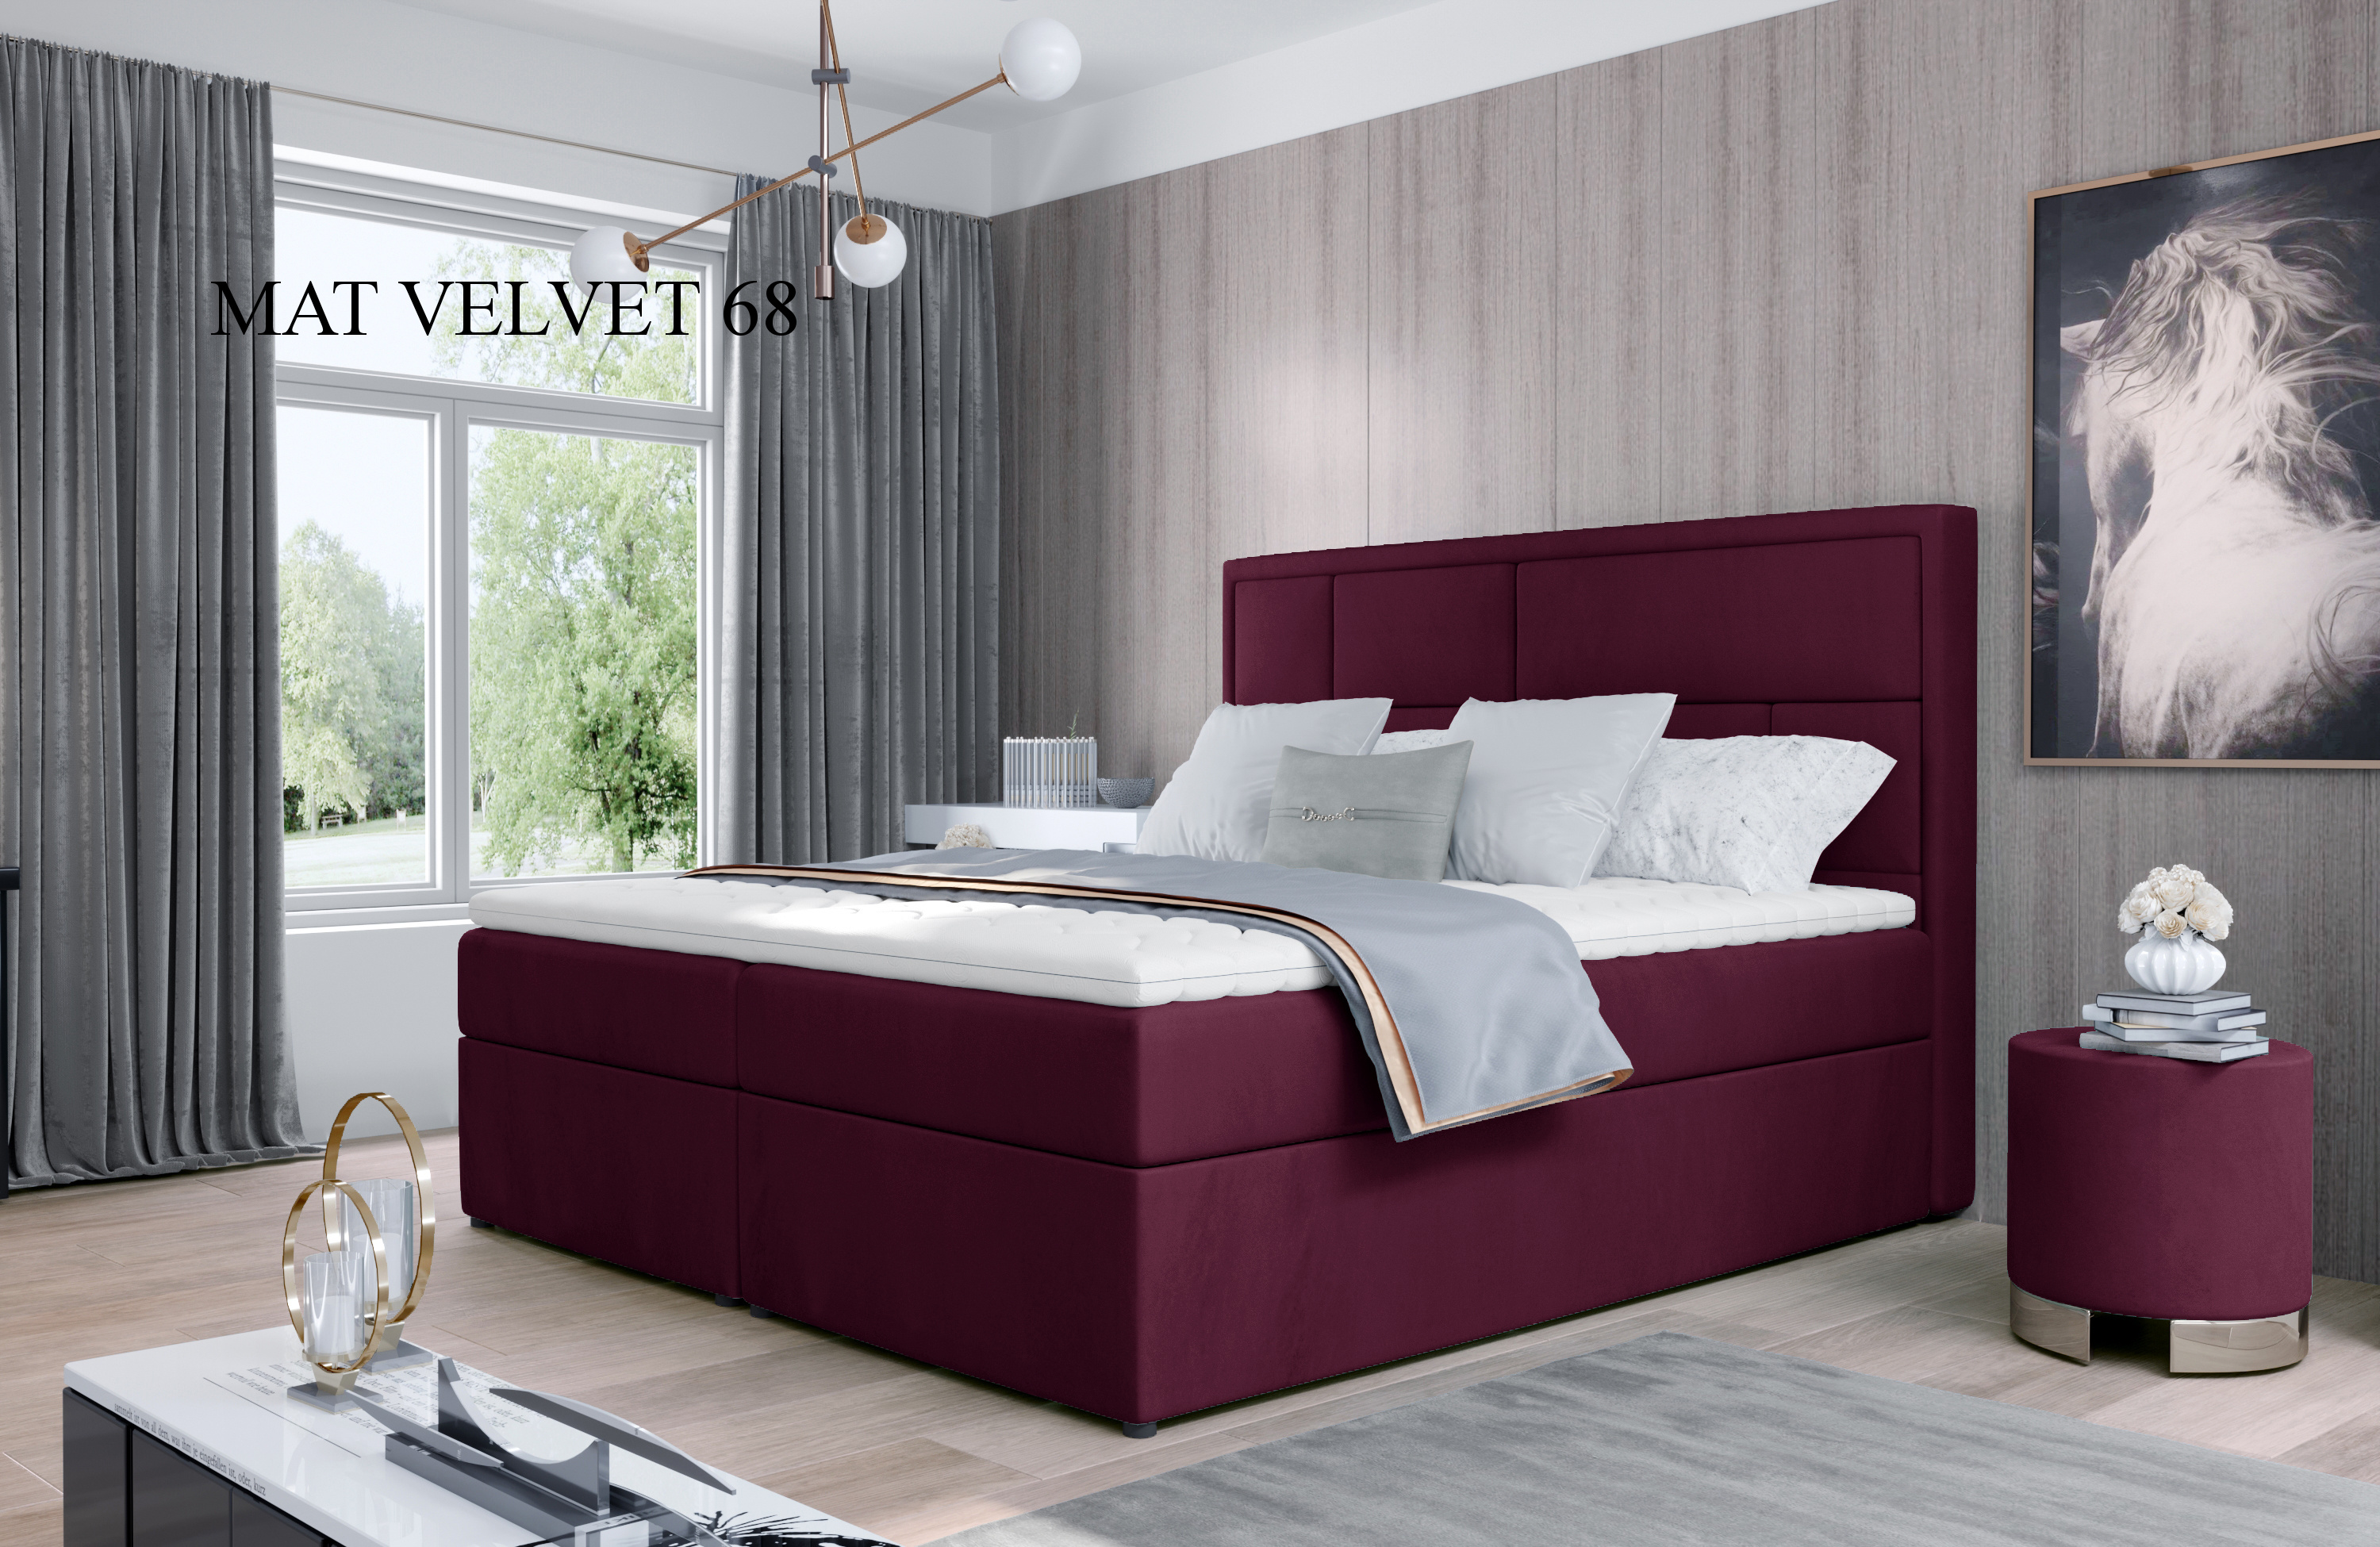 Čalouněná postel MERON Boxsprings 160 x 200 cm Provedení: Mat Velvet 68